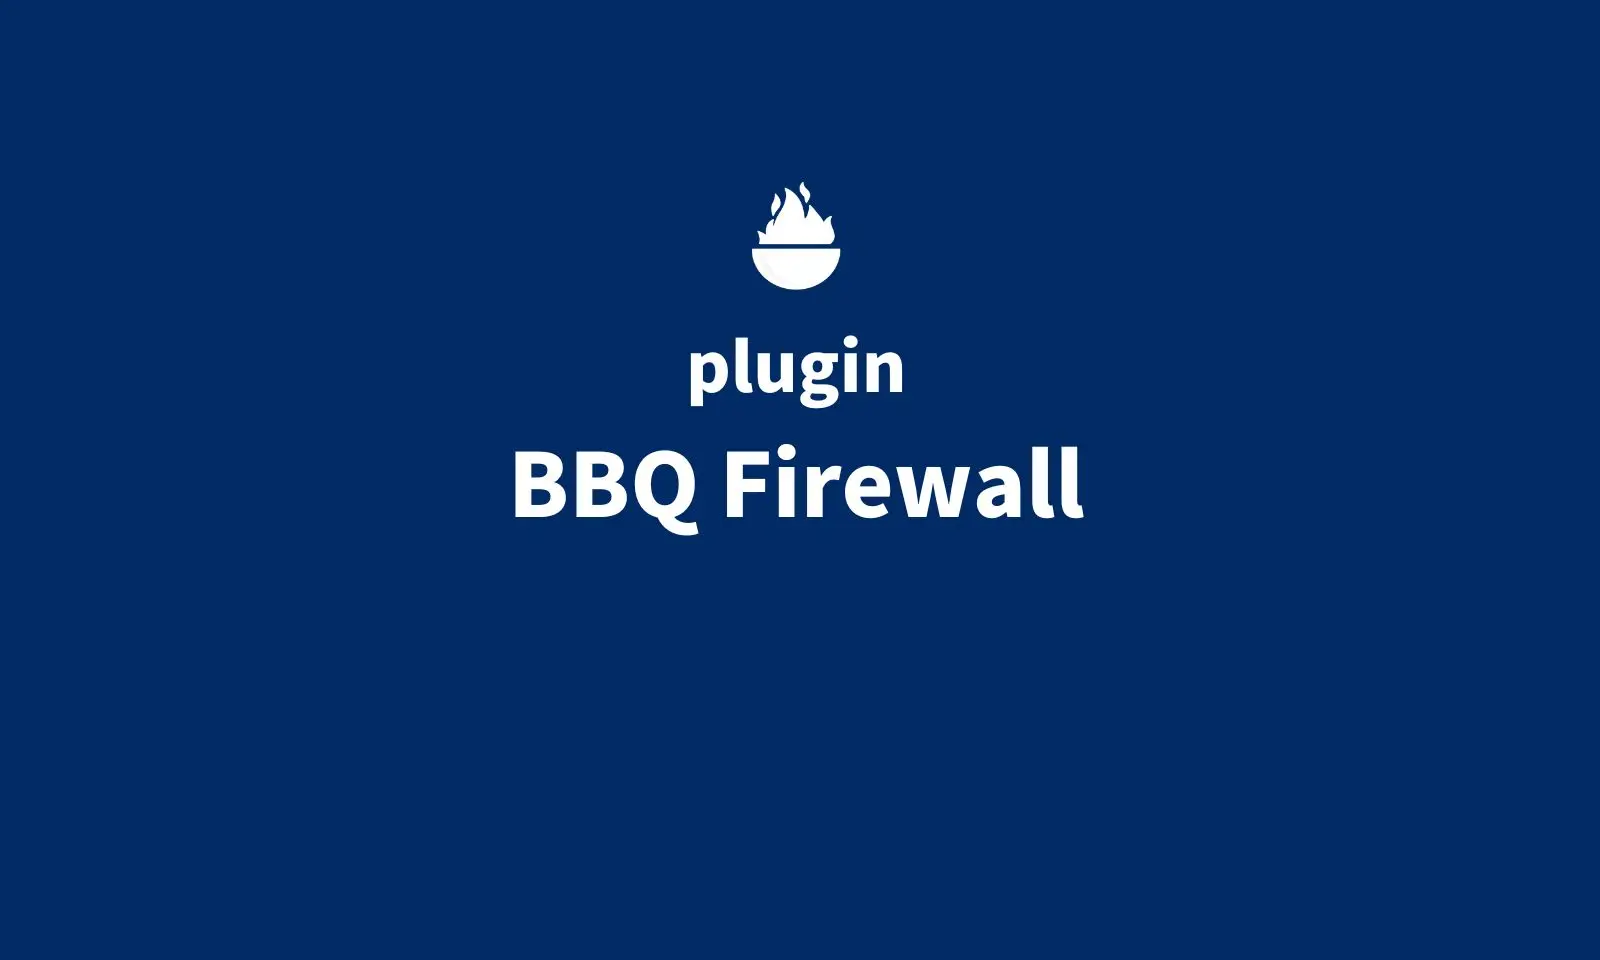 BBQ Firewall